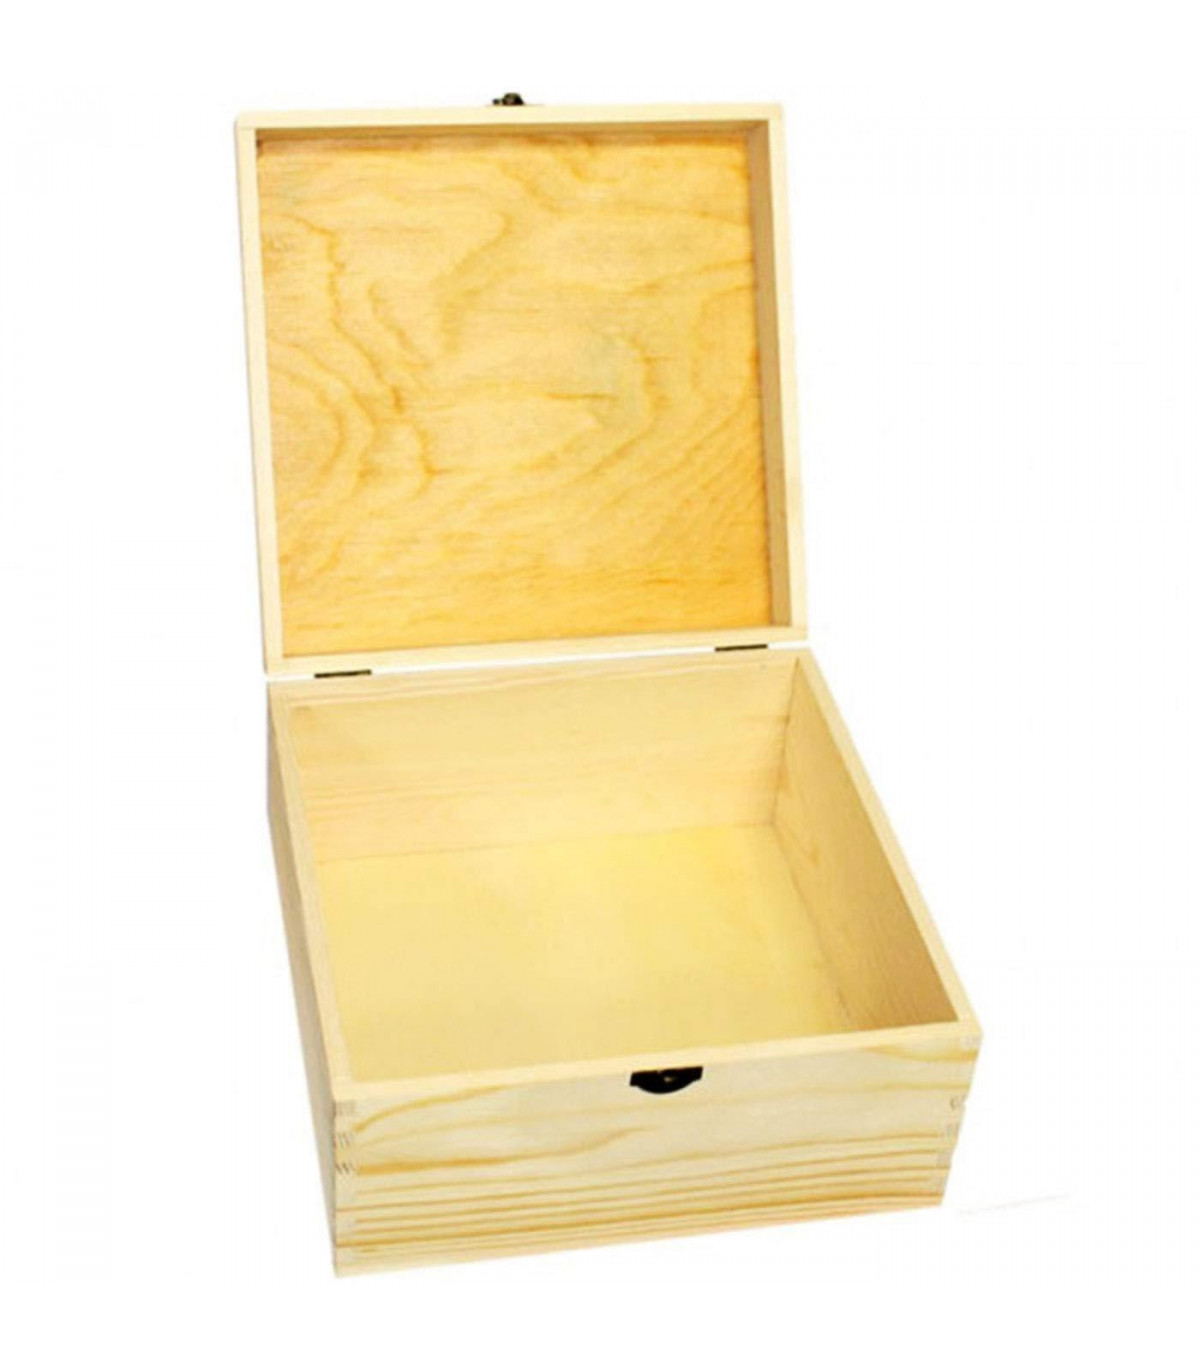 Conjunto de 3 cajas de madera, forma de baúl, 9,5 x 25 x 14 cm, juego cajas  rectangulares decorativas, cierre metálico frontal